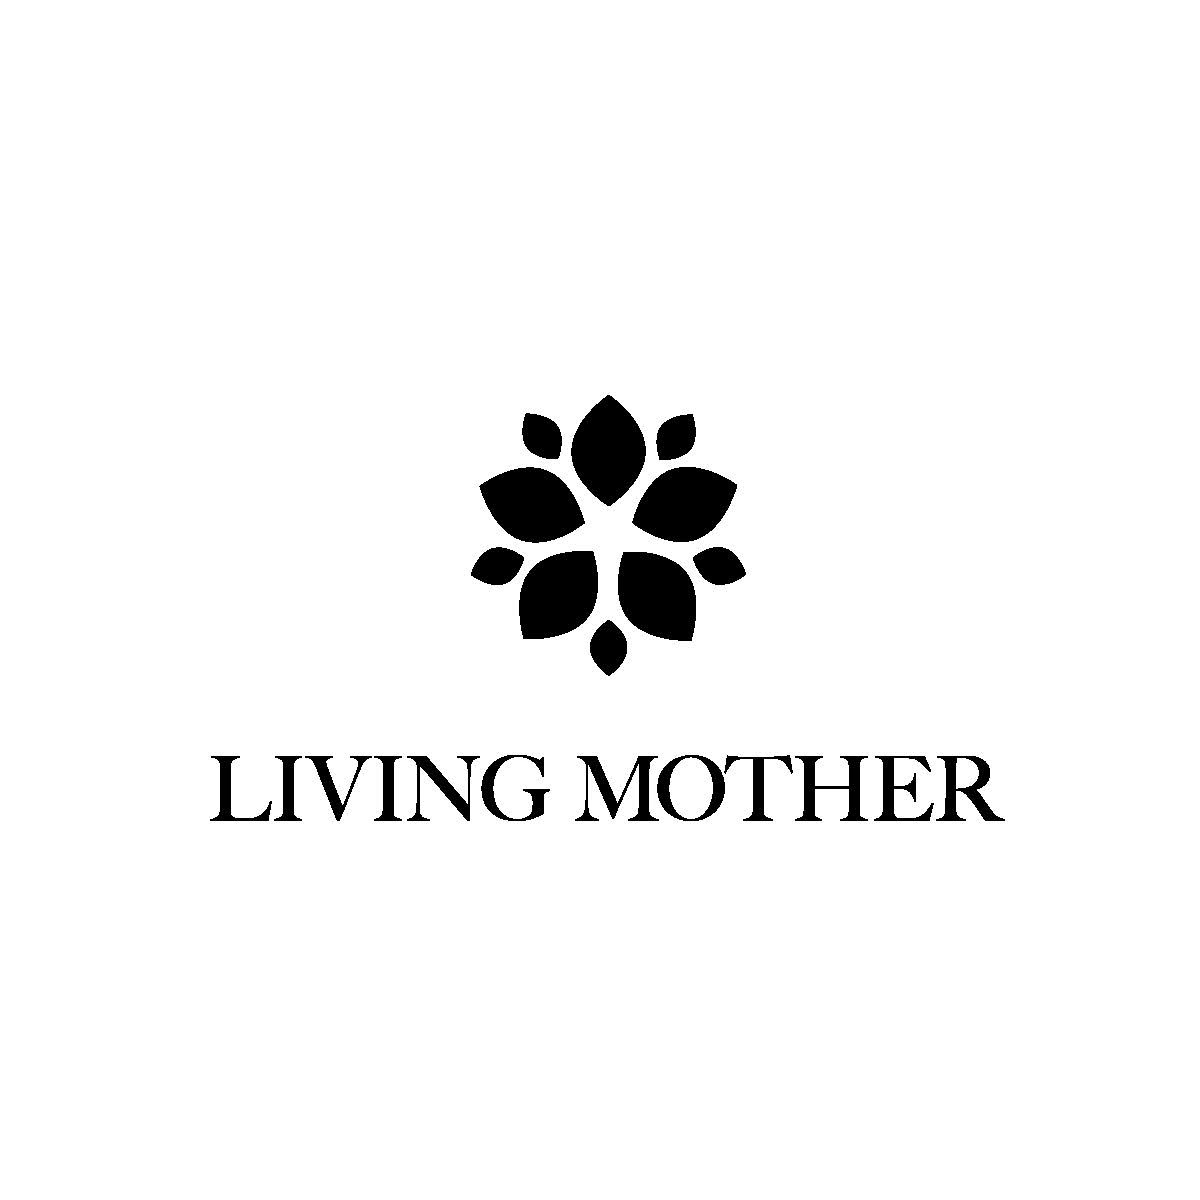 Adobe Portfolio logo mother concepts living